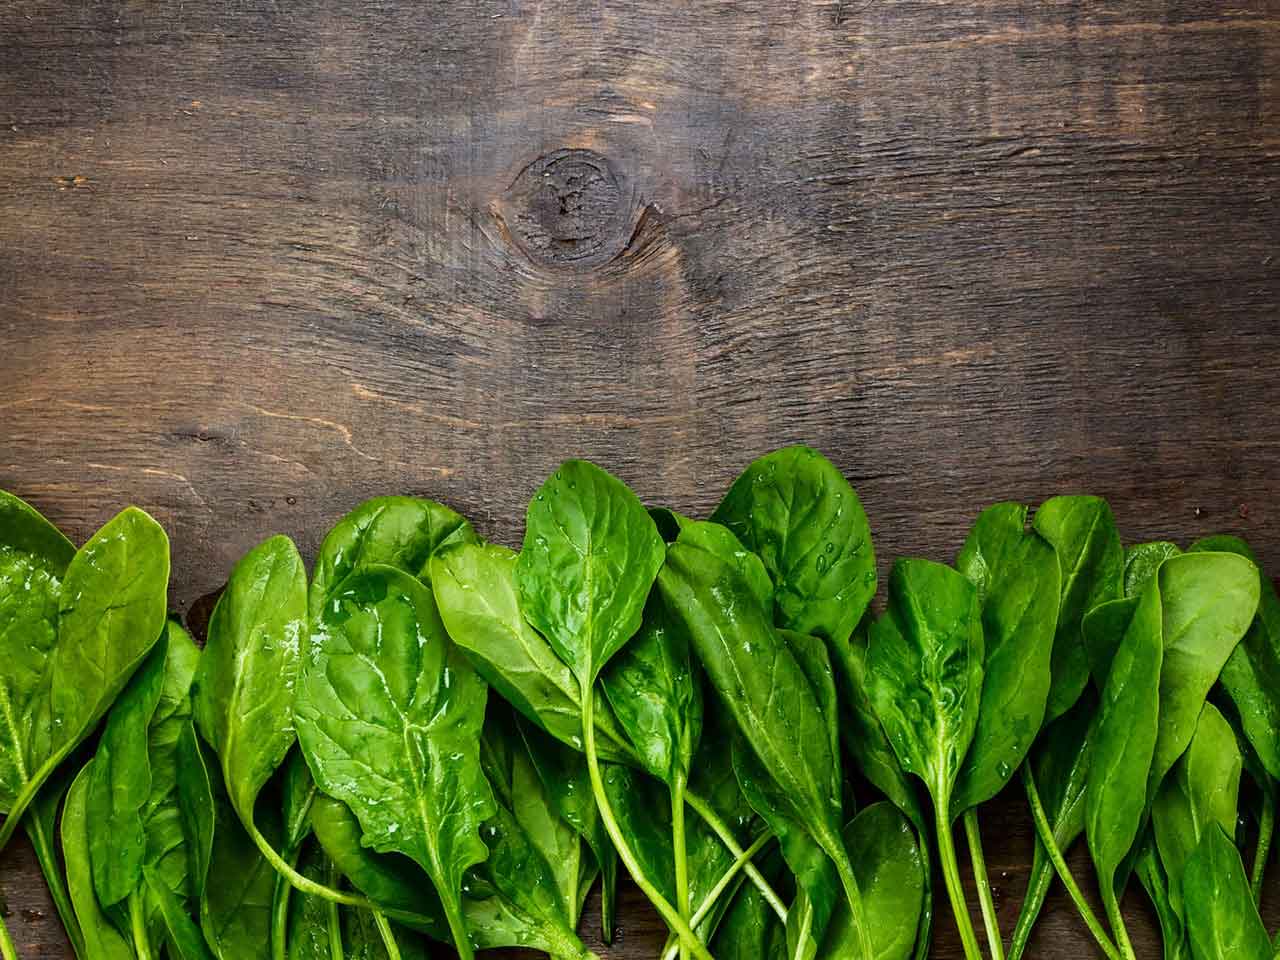 Folic acid rich spinach on a wooden board